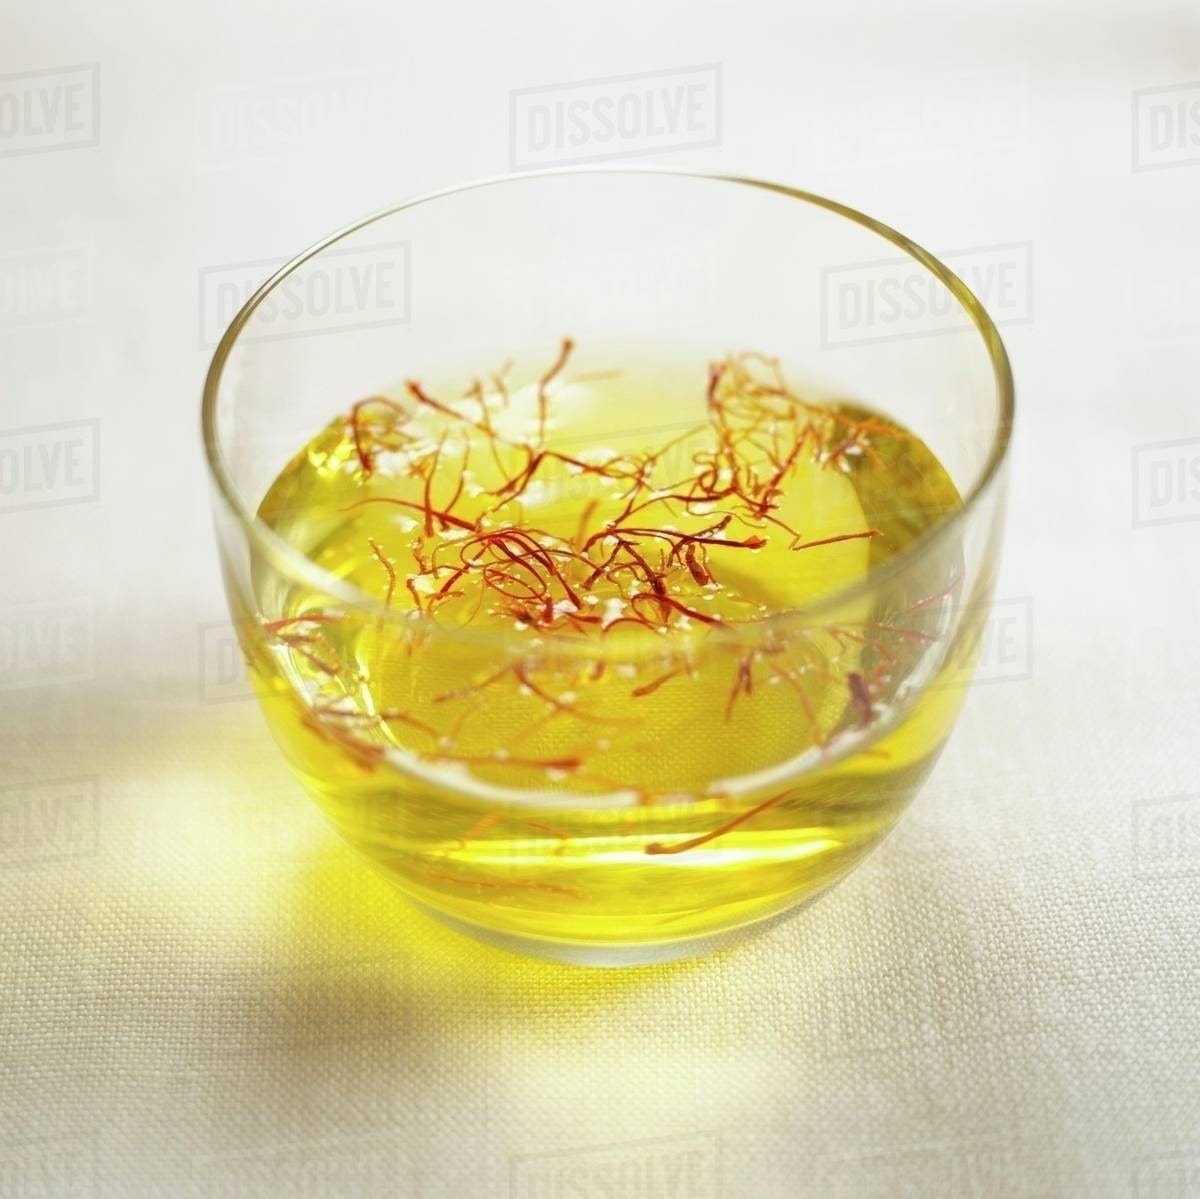 Pha chế Saffron cùng với nước ấm cực kì đơn giản